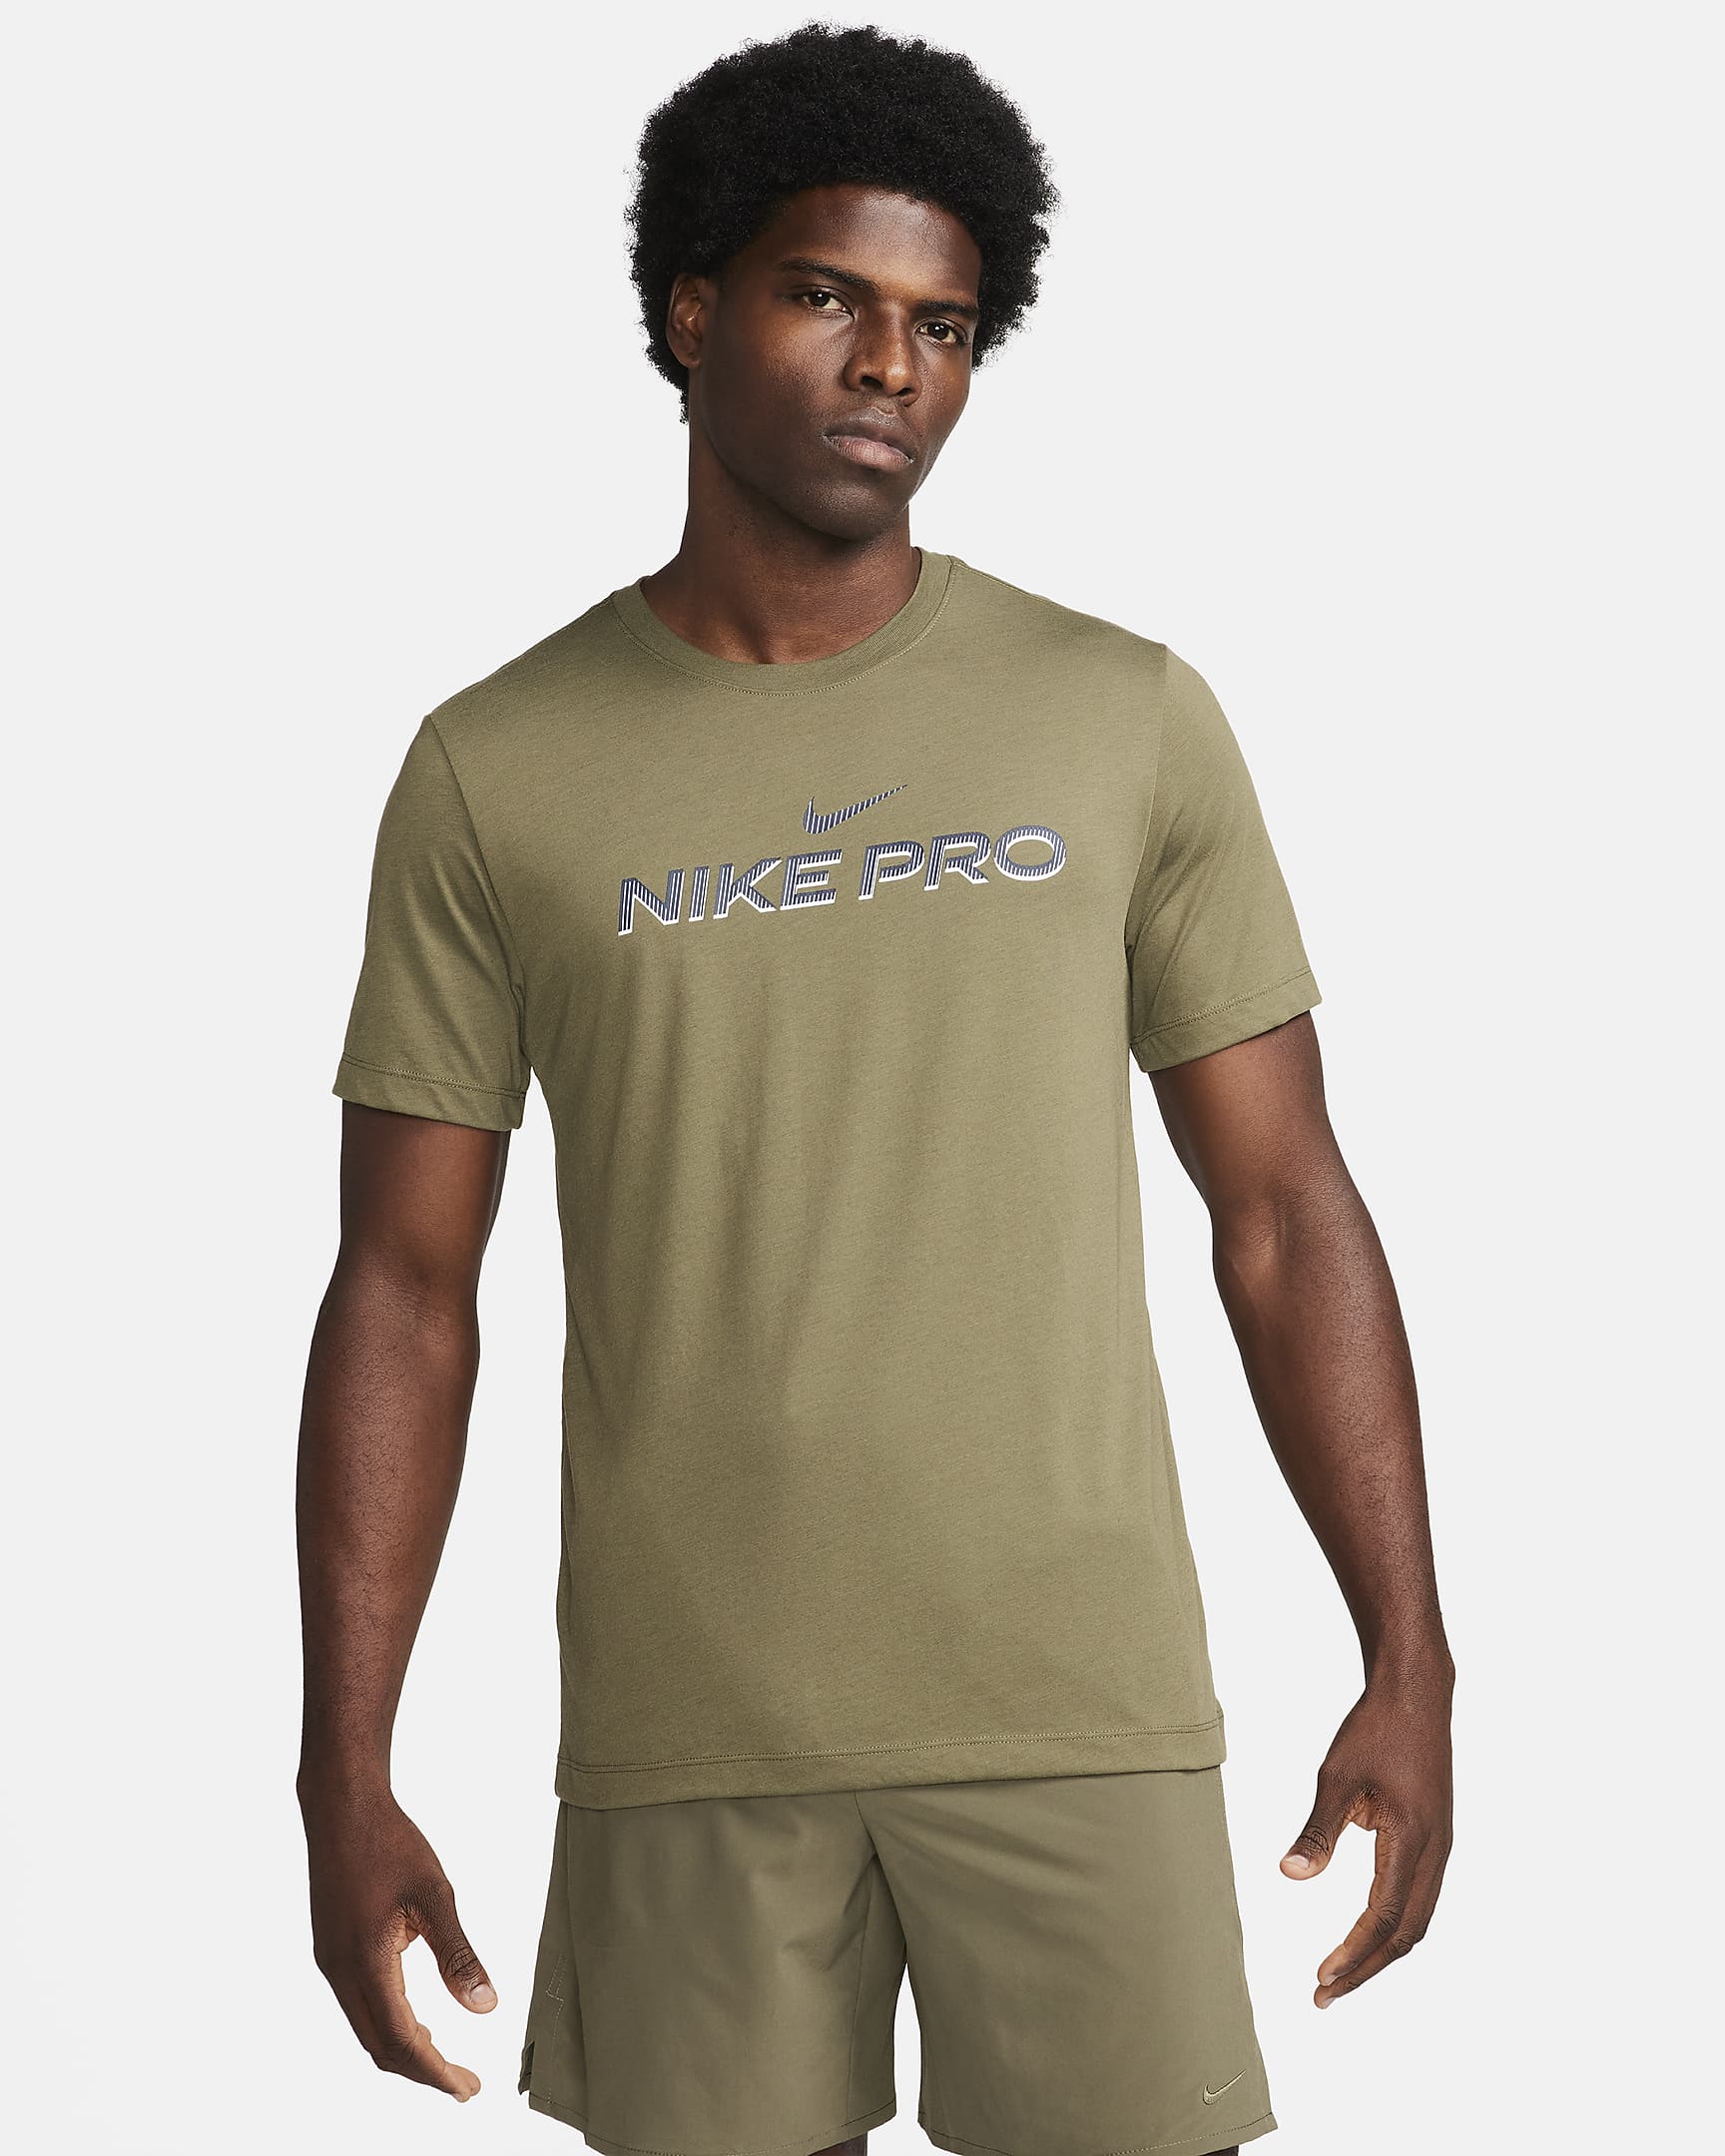 Nike Dri-Fit T-Shirt - Khaki